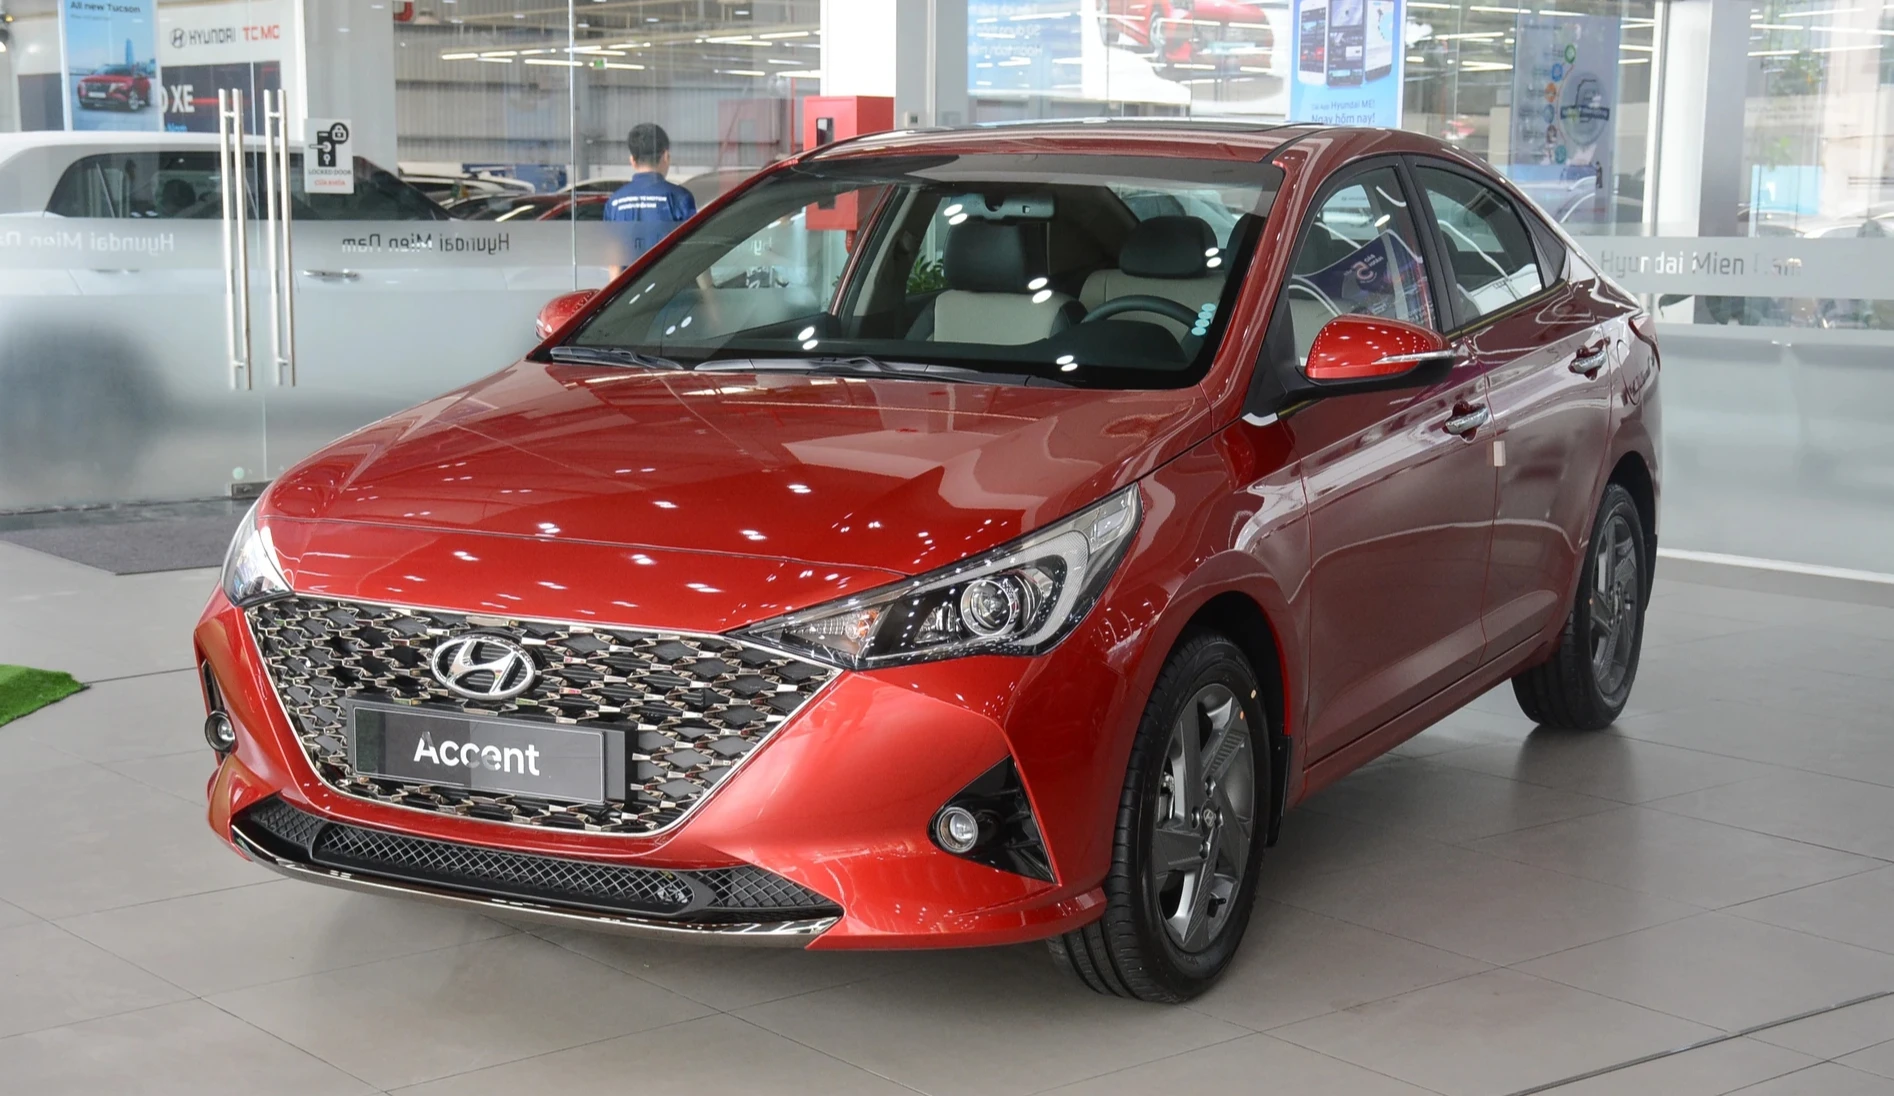 Hyundai Accent tiếp tục dậm chân ở vị trí thứ 5 trong cuộc đua doanh số tháng 4.2023, khi doanh số bán chỉ đạt 848 xe, giảm 119 xe so với tháng 3.2024. Tương tự những năm trước, Hyundai Accent tại Việt Nam do HTV lắp ráp phân phối, tuy nhiên mẫu xe này không có nhiều thay đổi về thiết kế, công nghệ. Mẫu xe này hiện có 4 phiên bản, giá bán từ 426 - 542 triệu đồng.